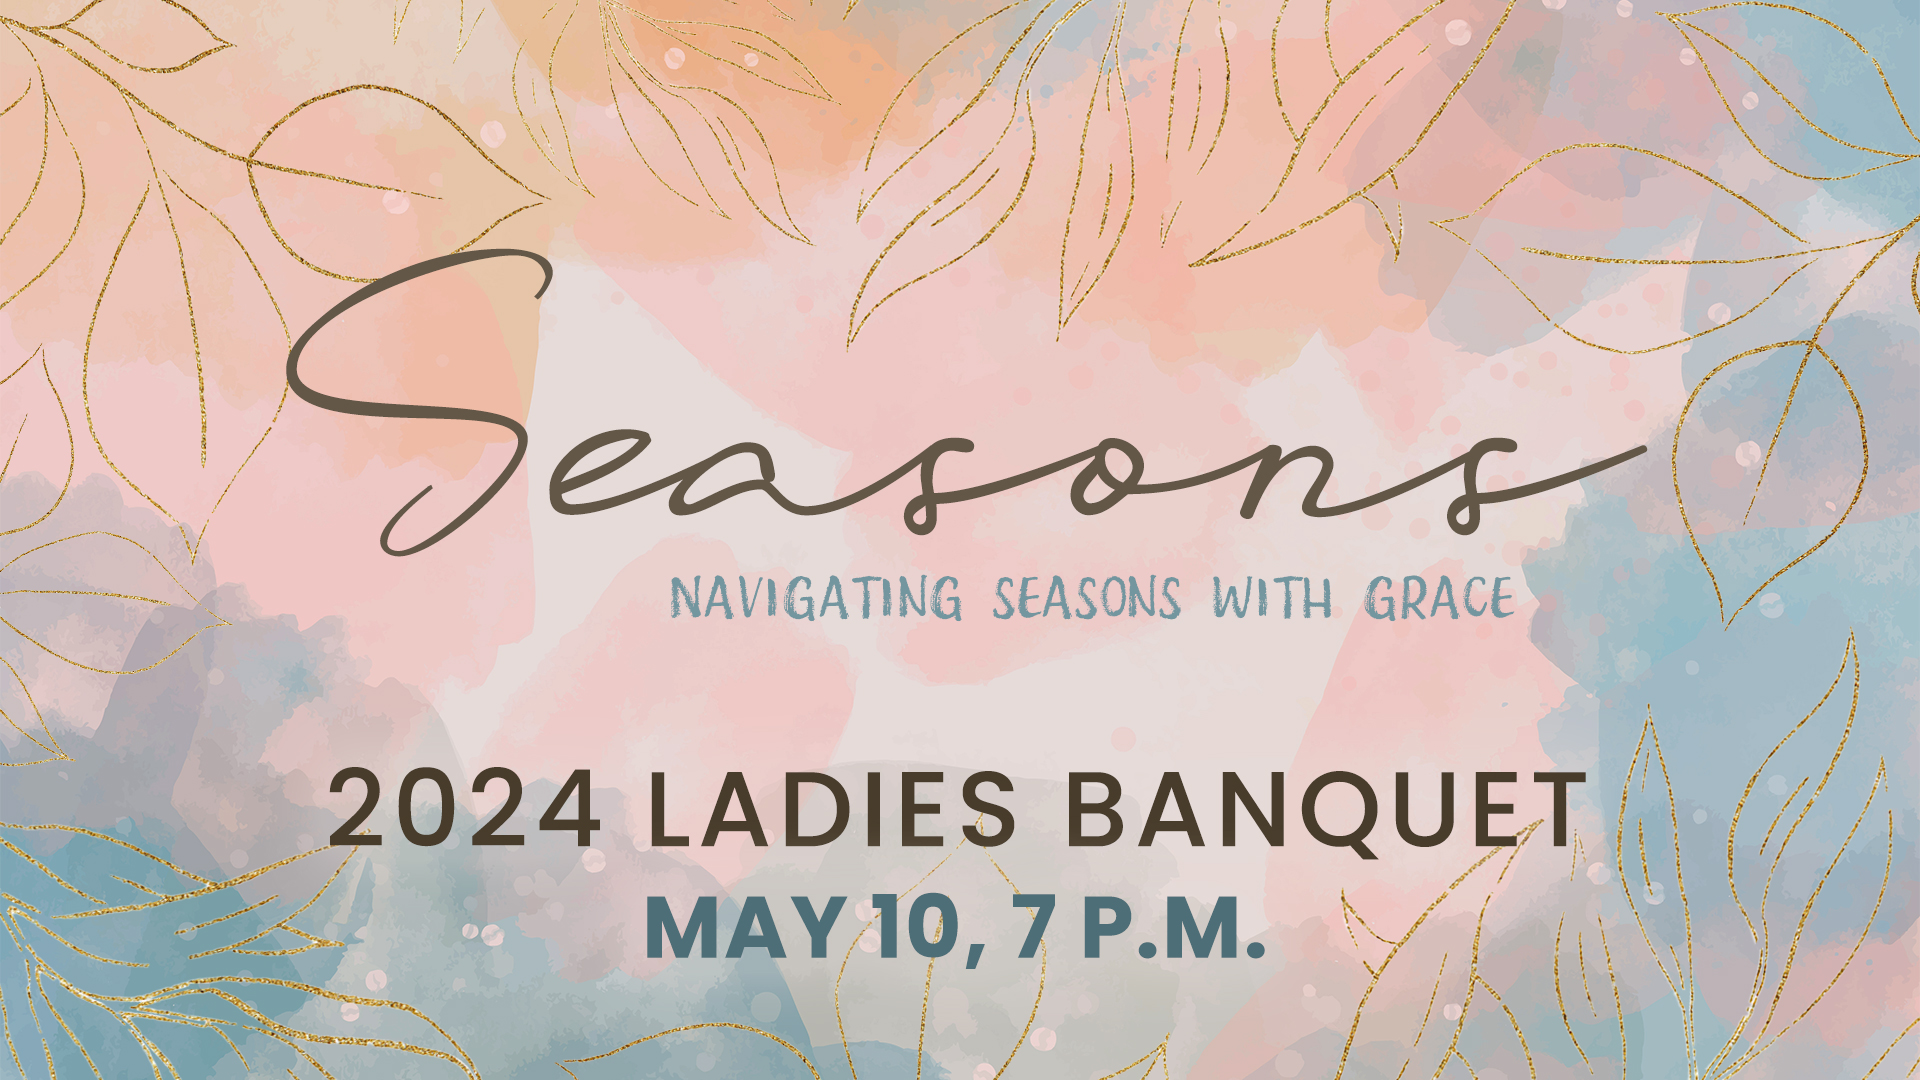 Seasons 2024 Ladies Banquet May 10, 7 p.m.